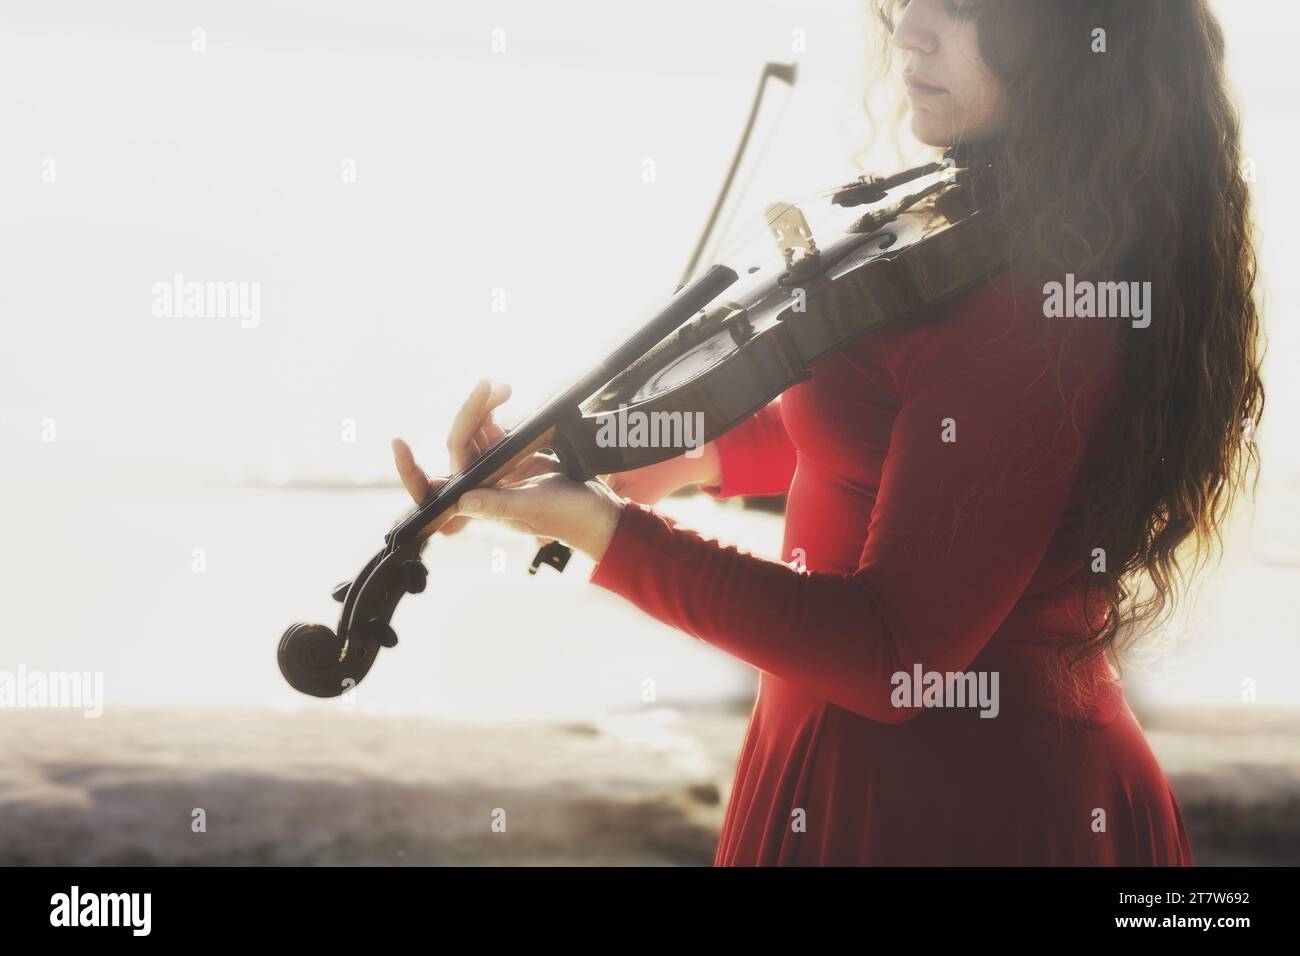 portrait de femme jouant passionnément du violon, concept abstrait Banque D'Images